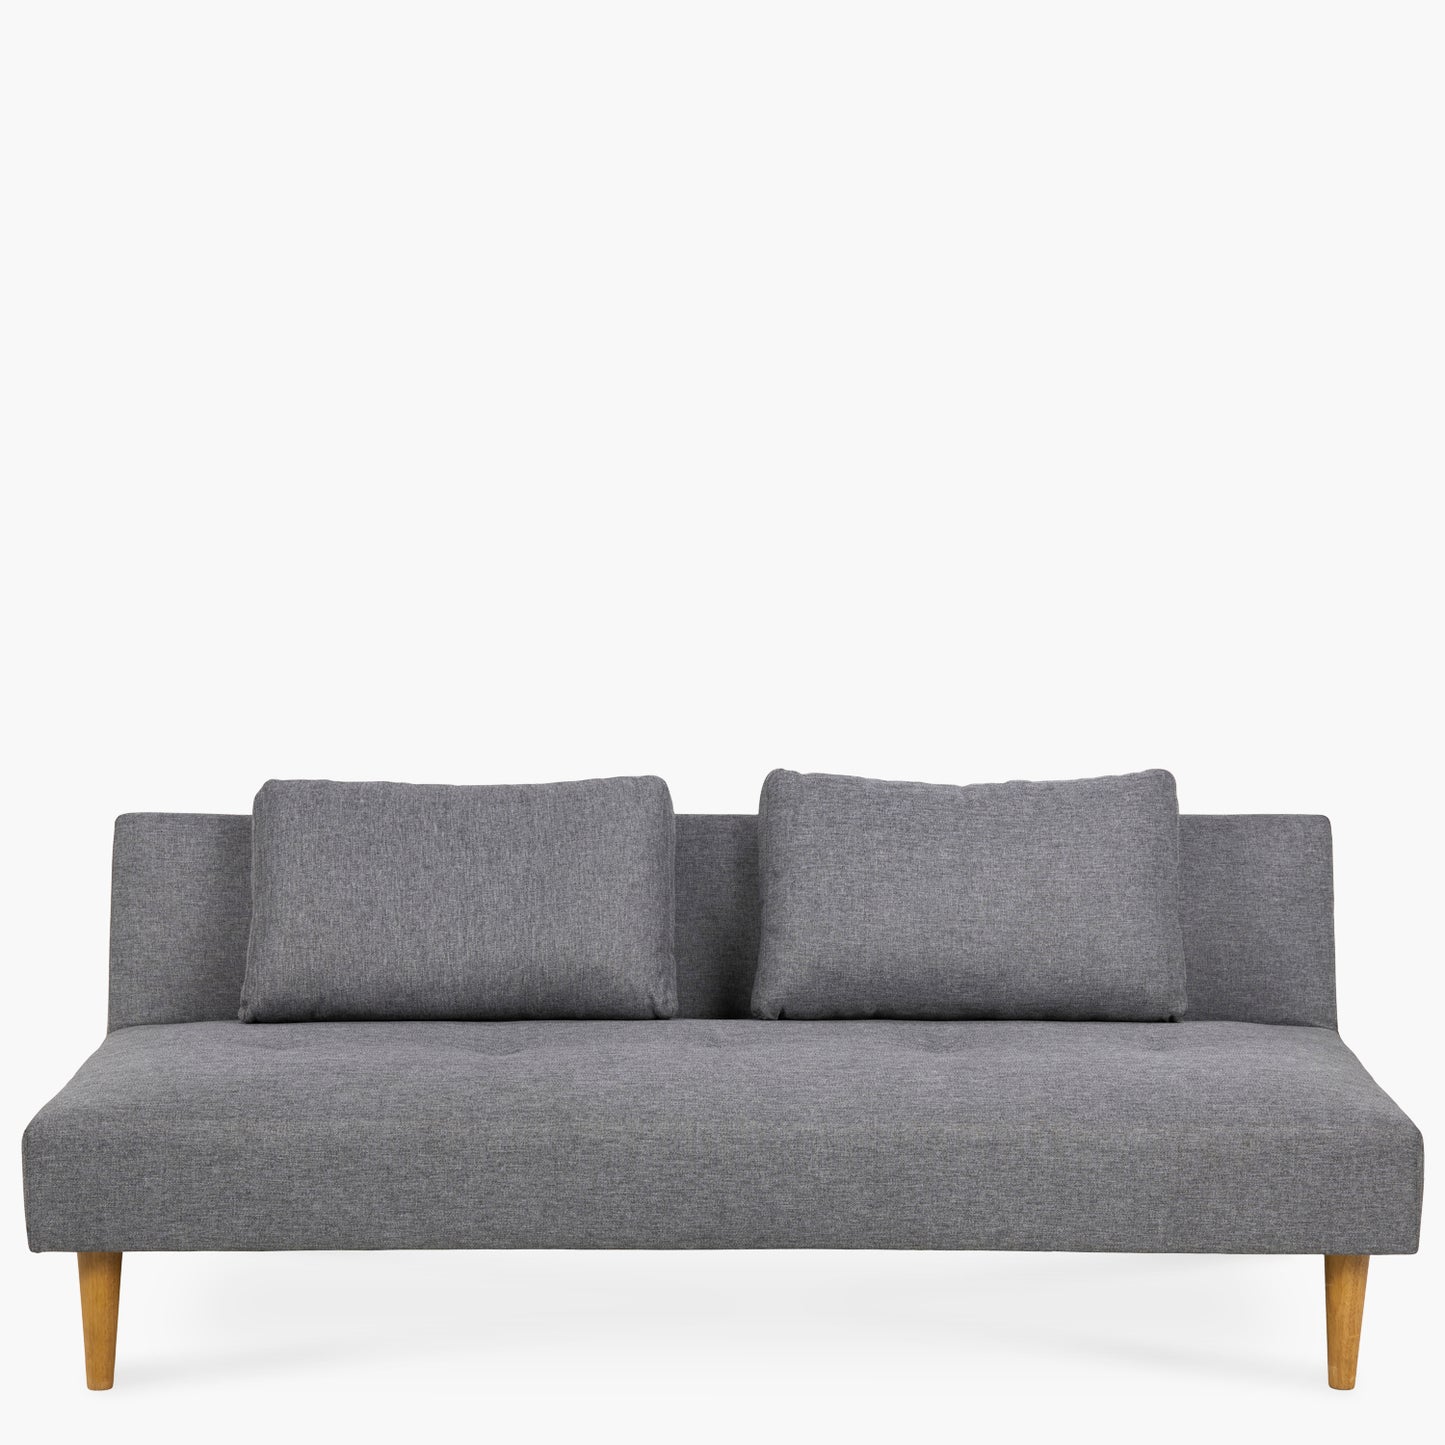 sofa-cama-lucas-gris-form-design